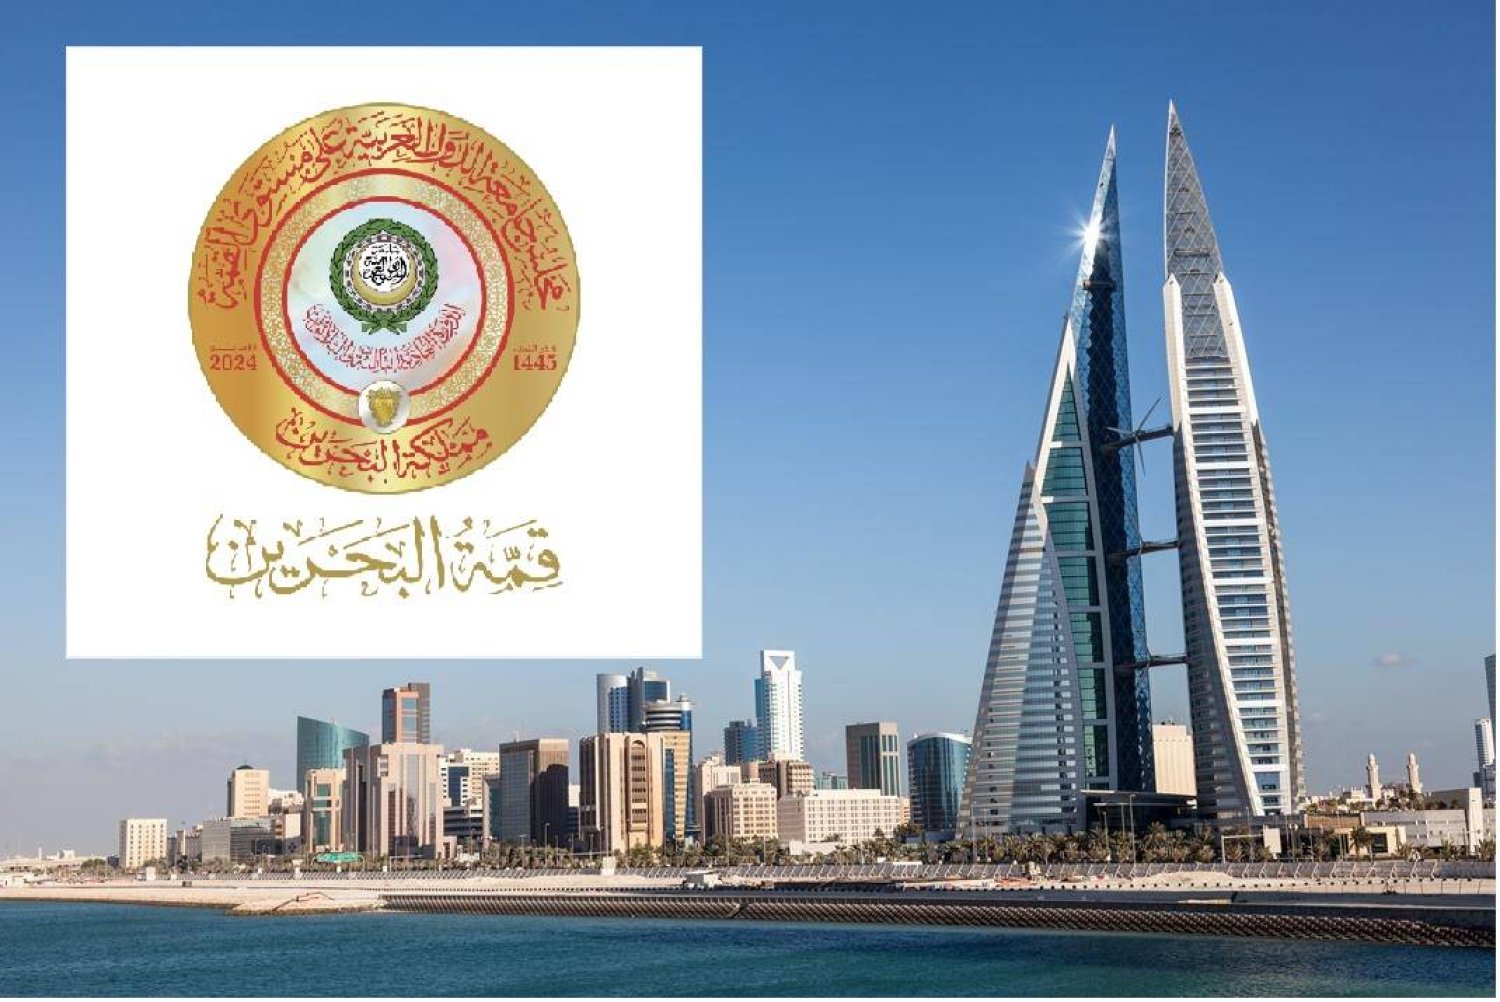 تستضيف البحرين القمة العربية الـ33 للمرة الأولى في تاريخ المملكة الخليجية (الشرق الأوسط)